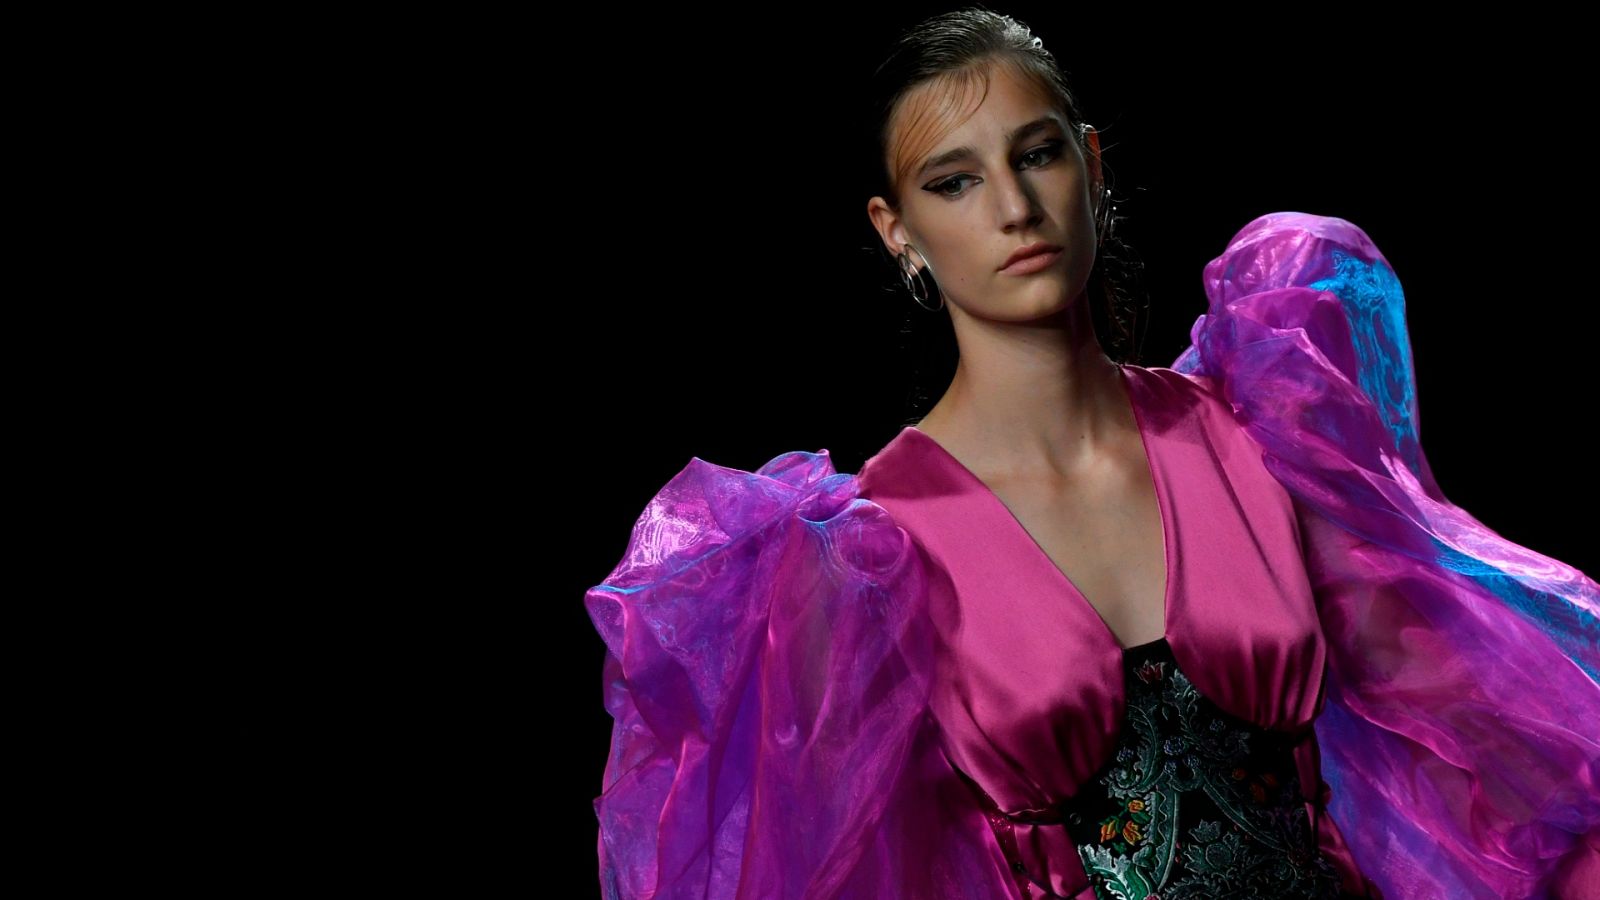 Finaliza una edición de la Madrid Fashion Week marcada por el coronavirus